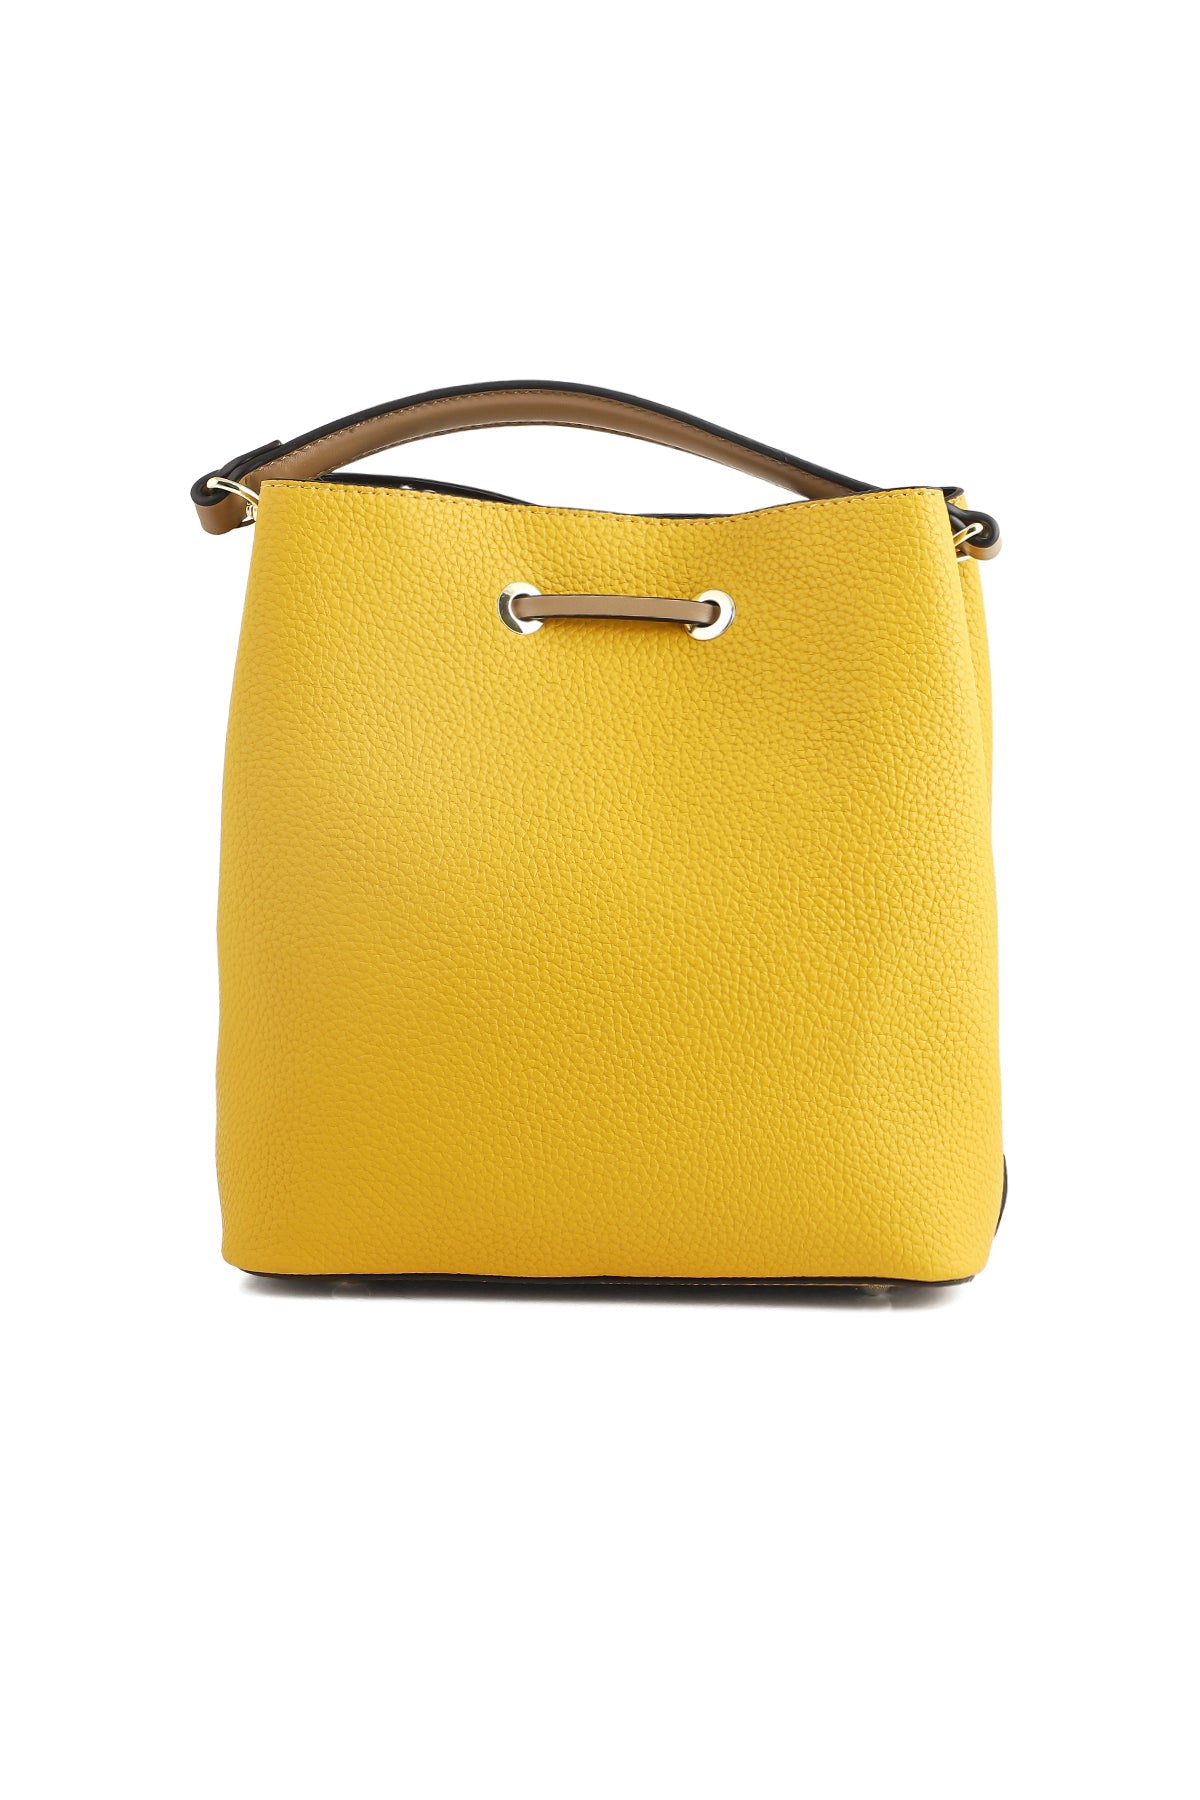 Bucket Hand Bags B14982-Yellow